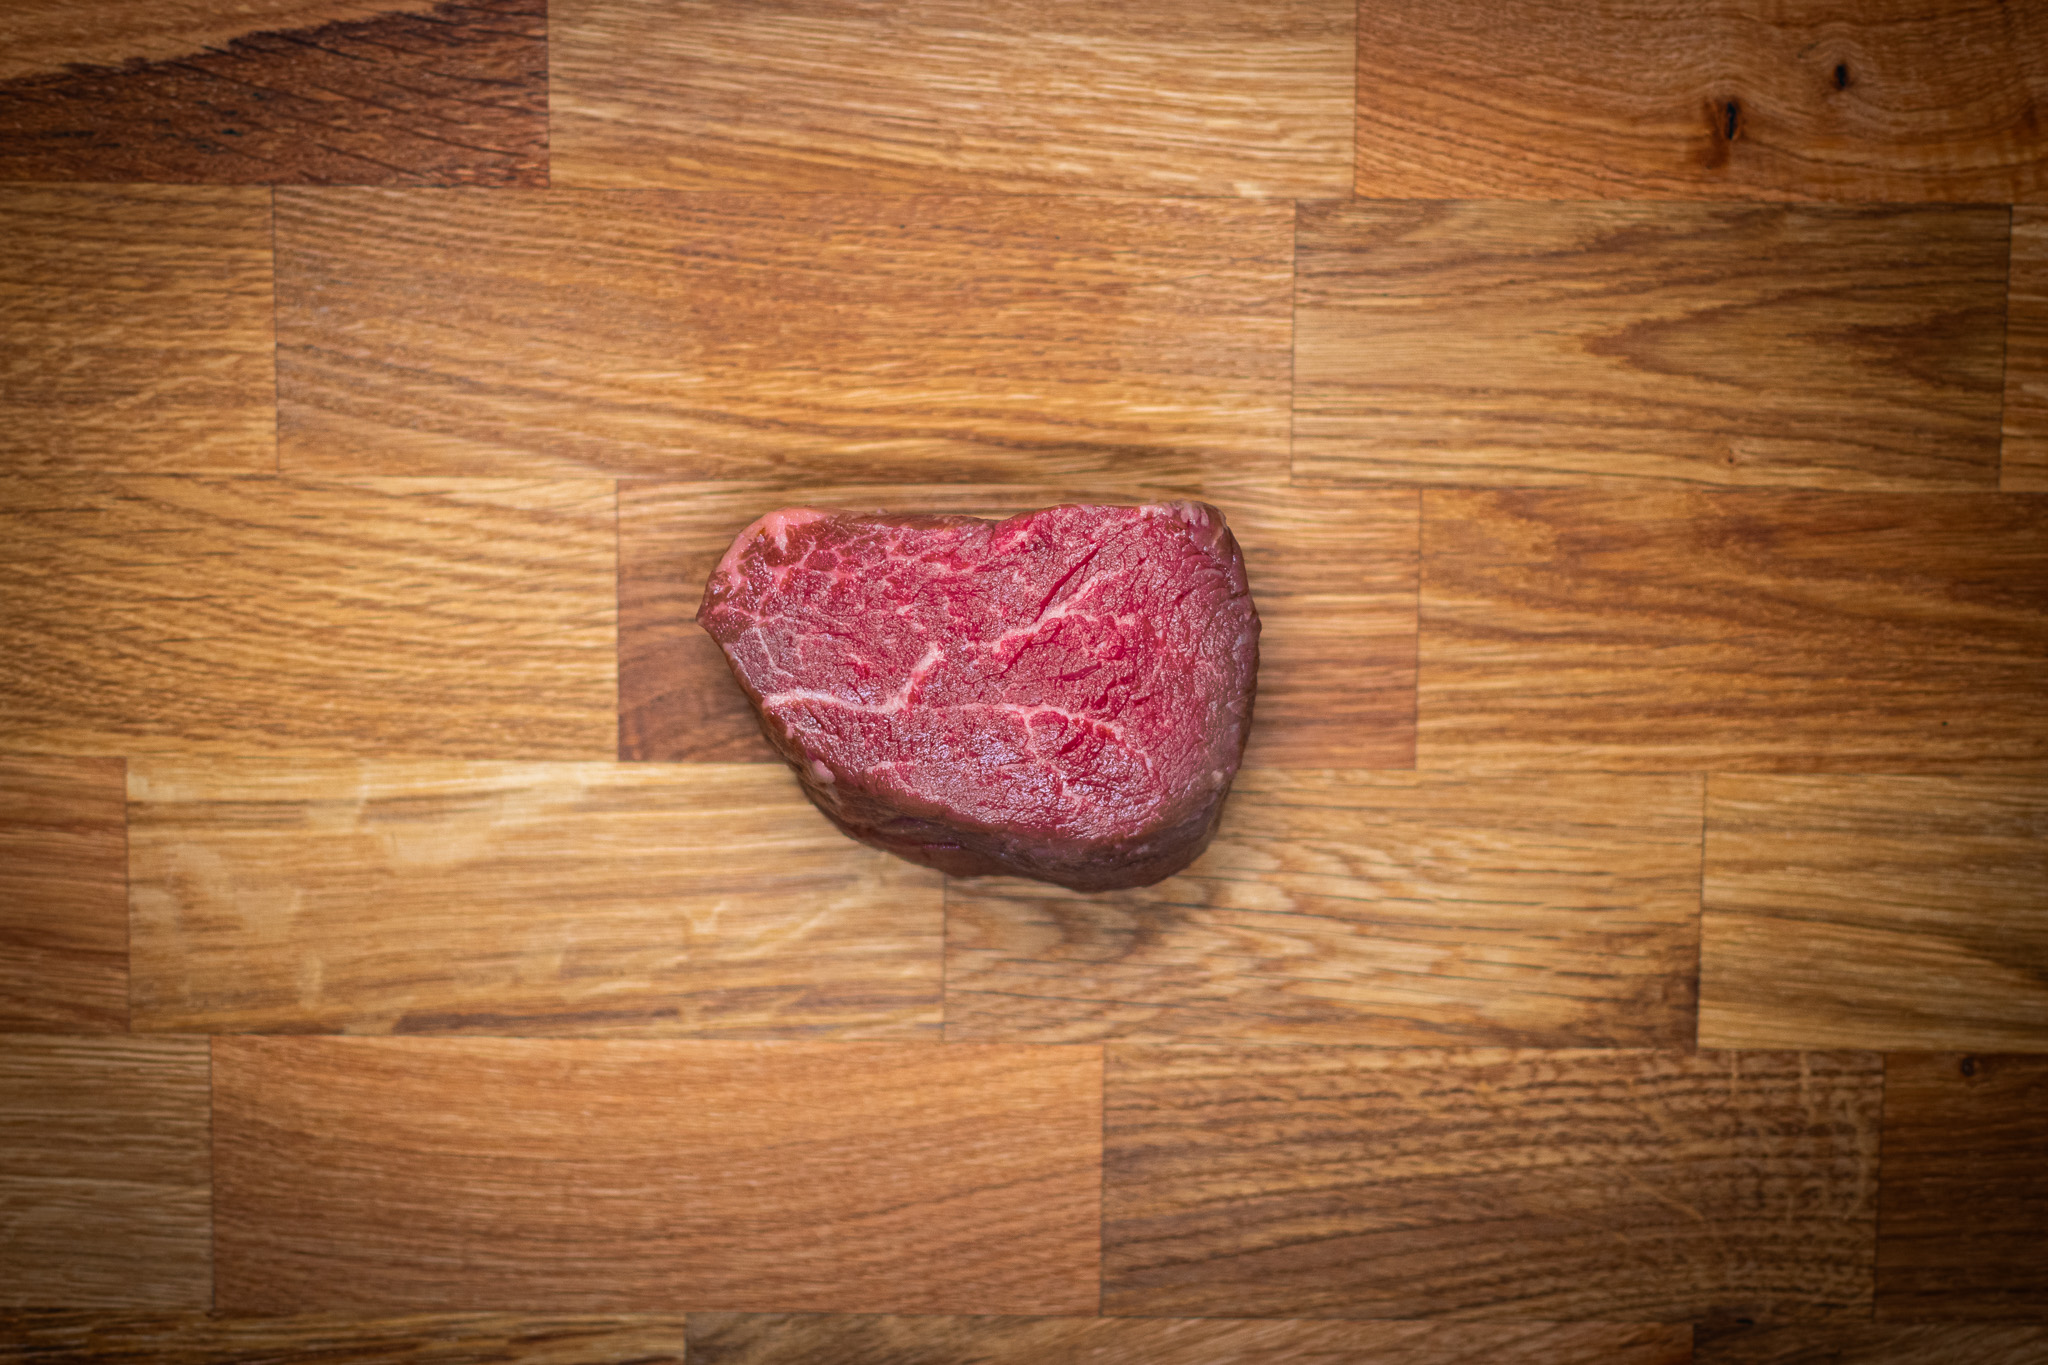 Argentina Fillet steak